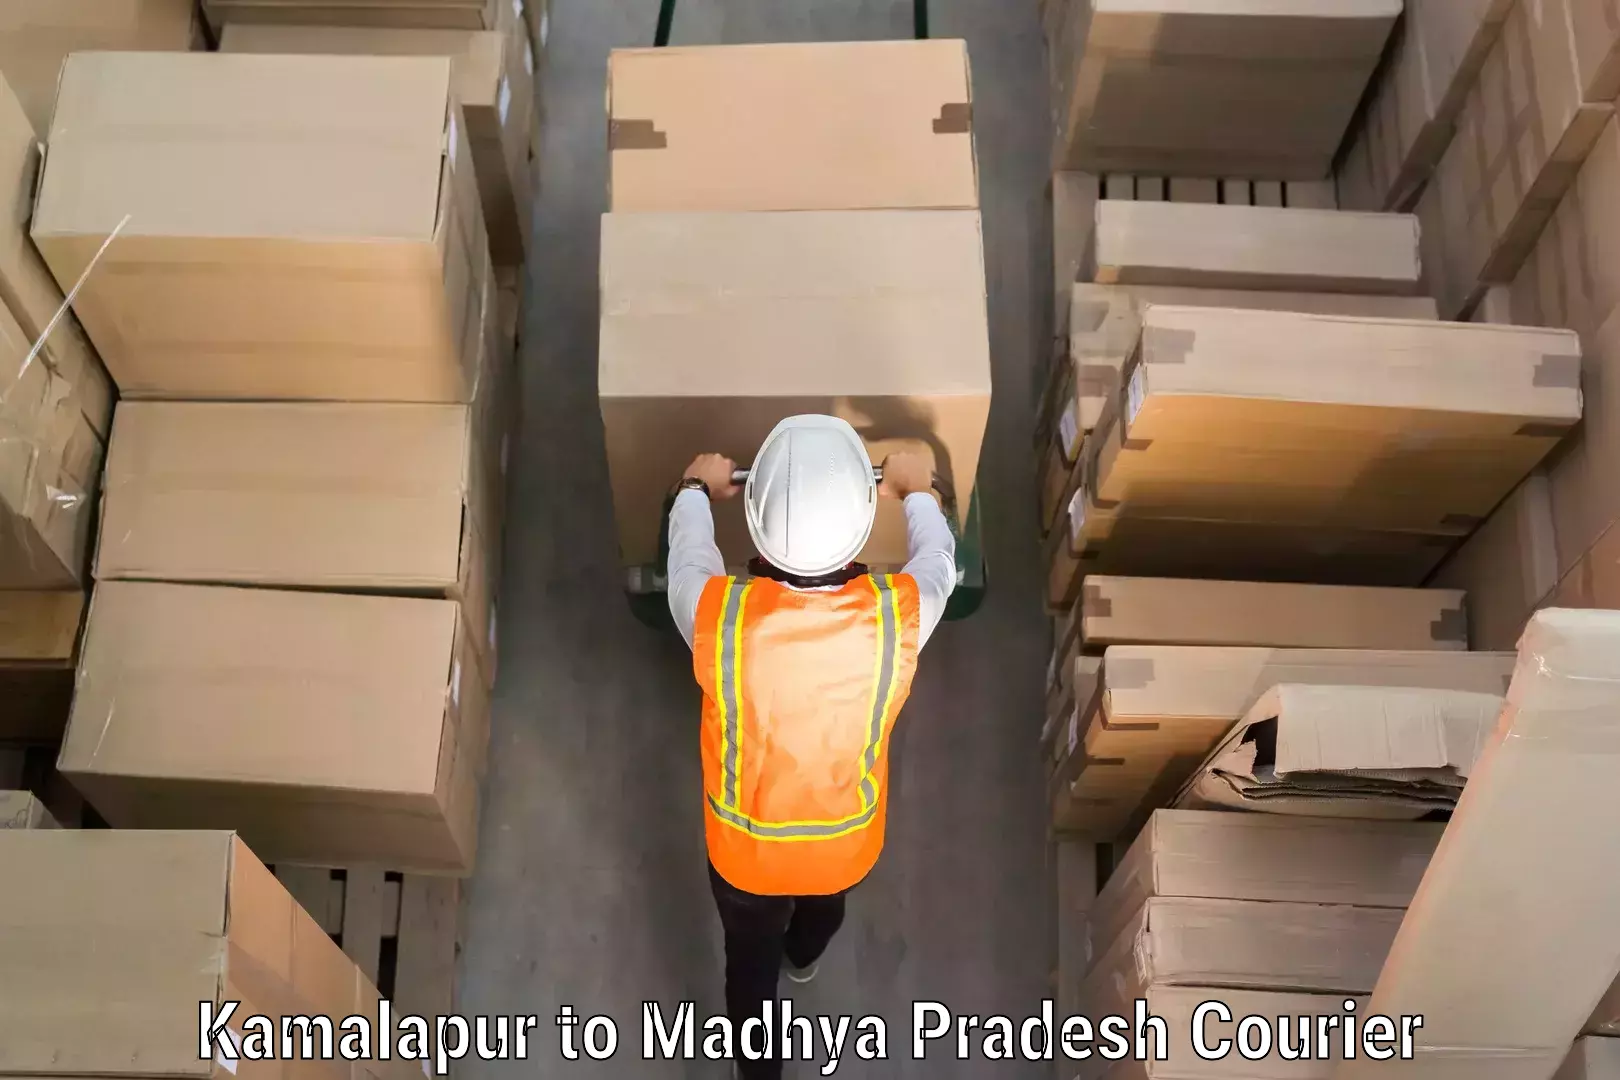 Luggage shipping specialists Kamalapur to Sendhwa